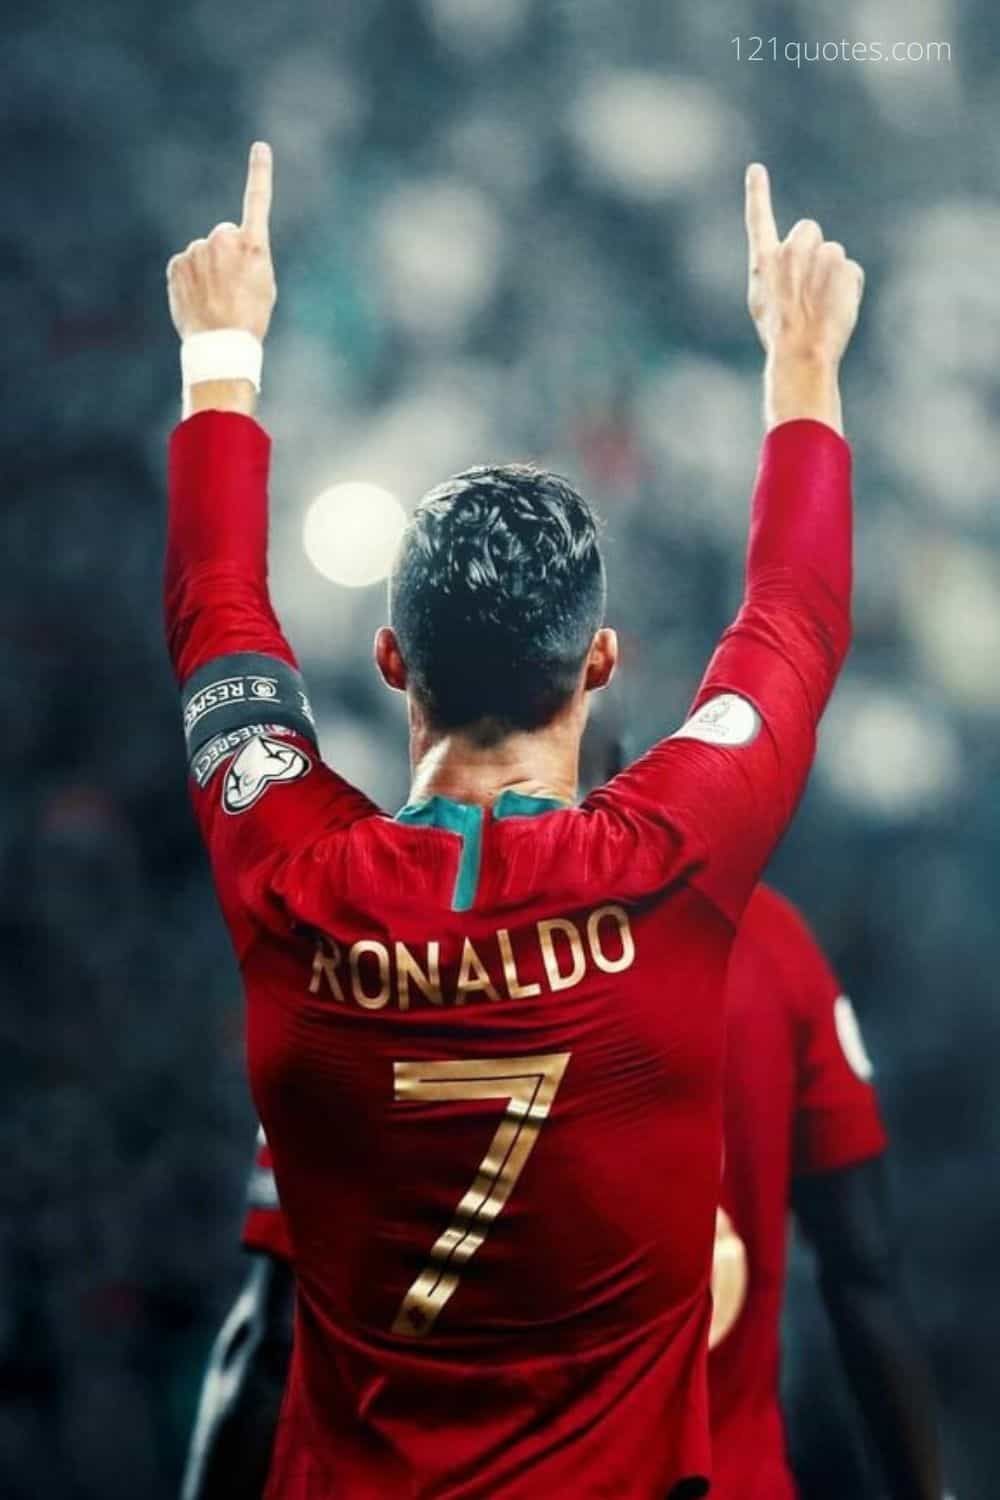 Cristiano Ronaldo Wallpaper. Cristiano ronaldo wallpaper, Ronaldo, Ronaldo wallpaper